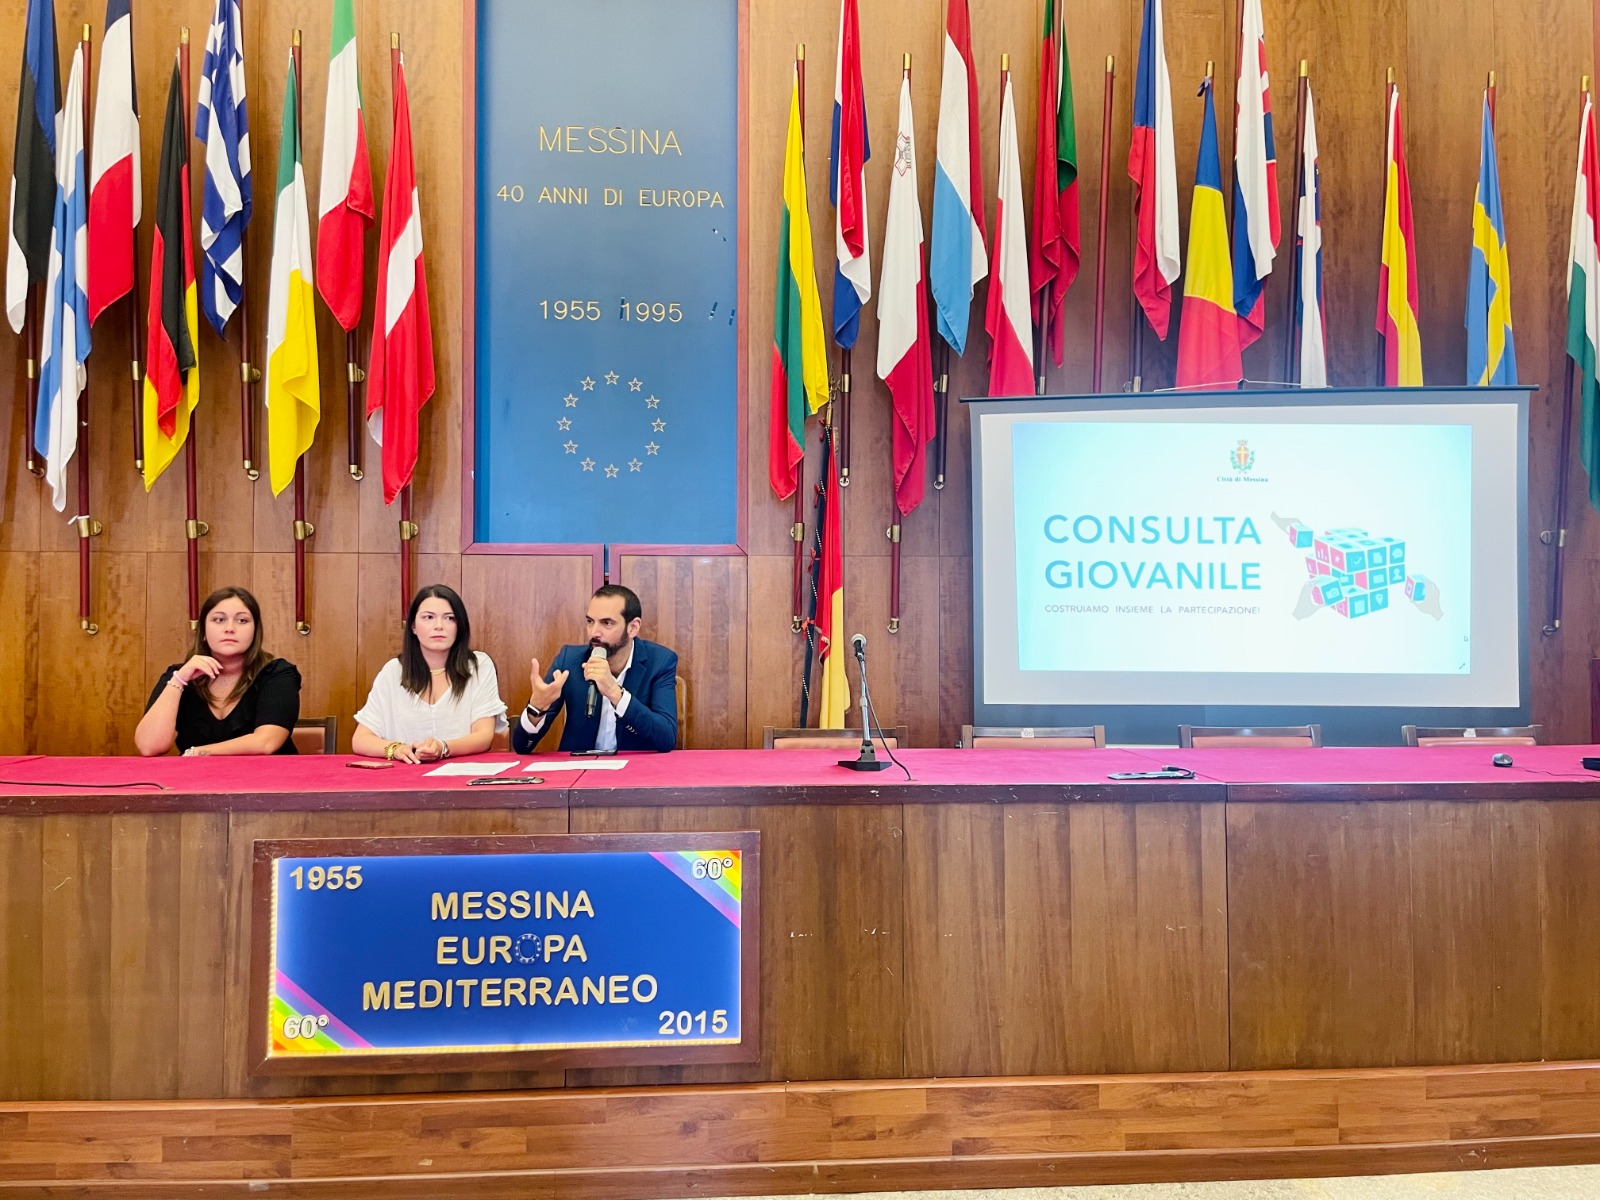 Lunedì 31 a palazzo Zanca la presentazione ufficiale della Consulta giovanile del Comune di Messina